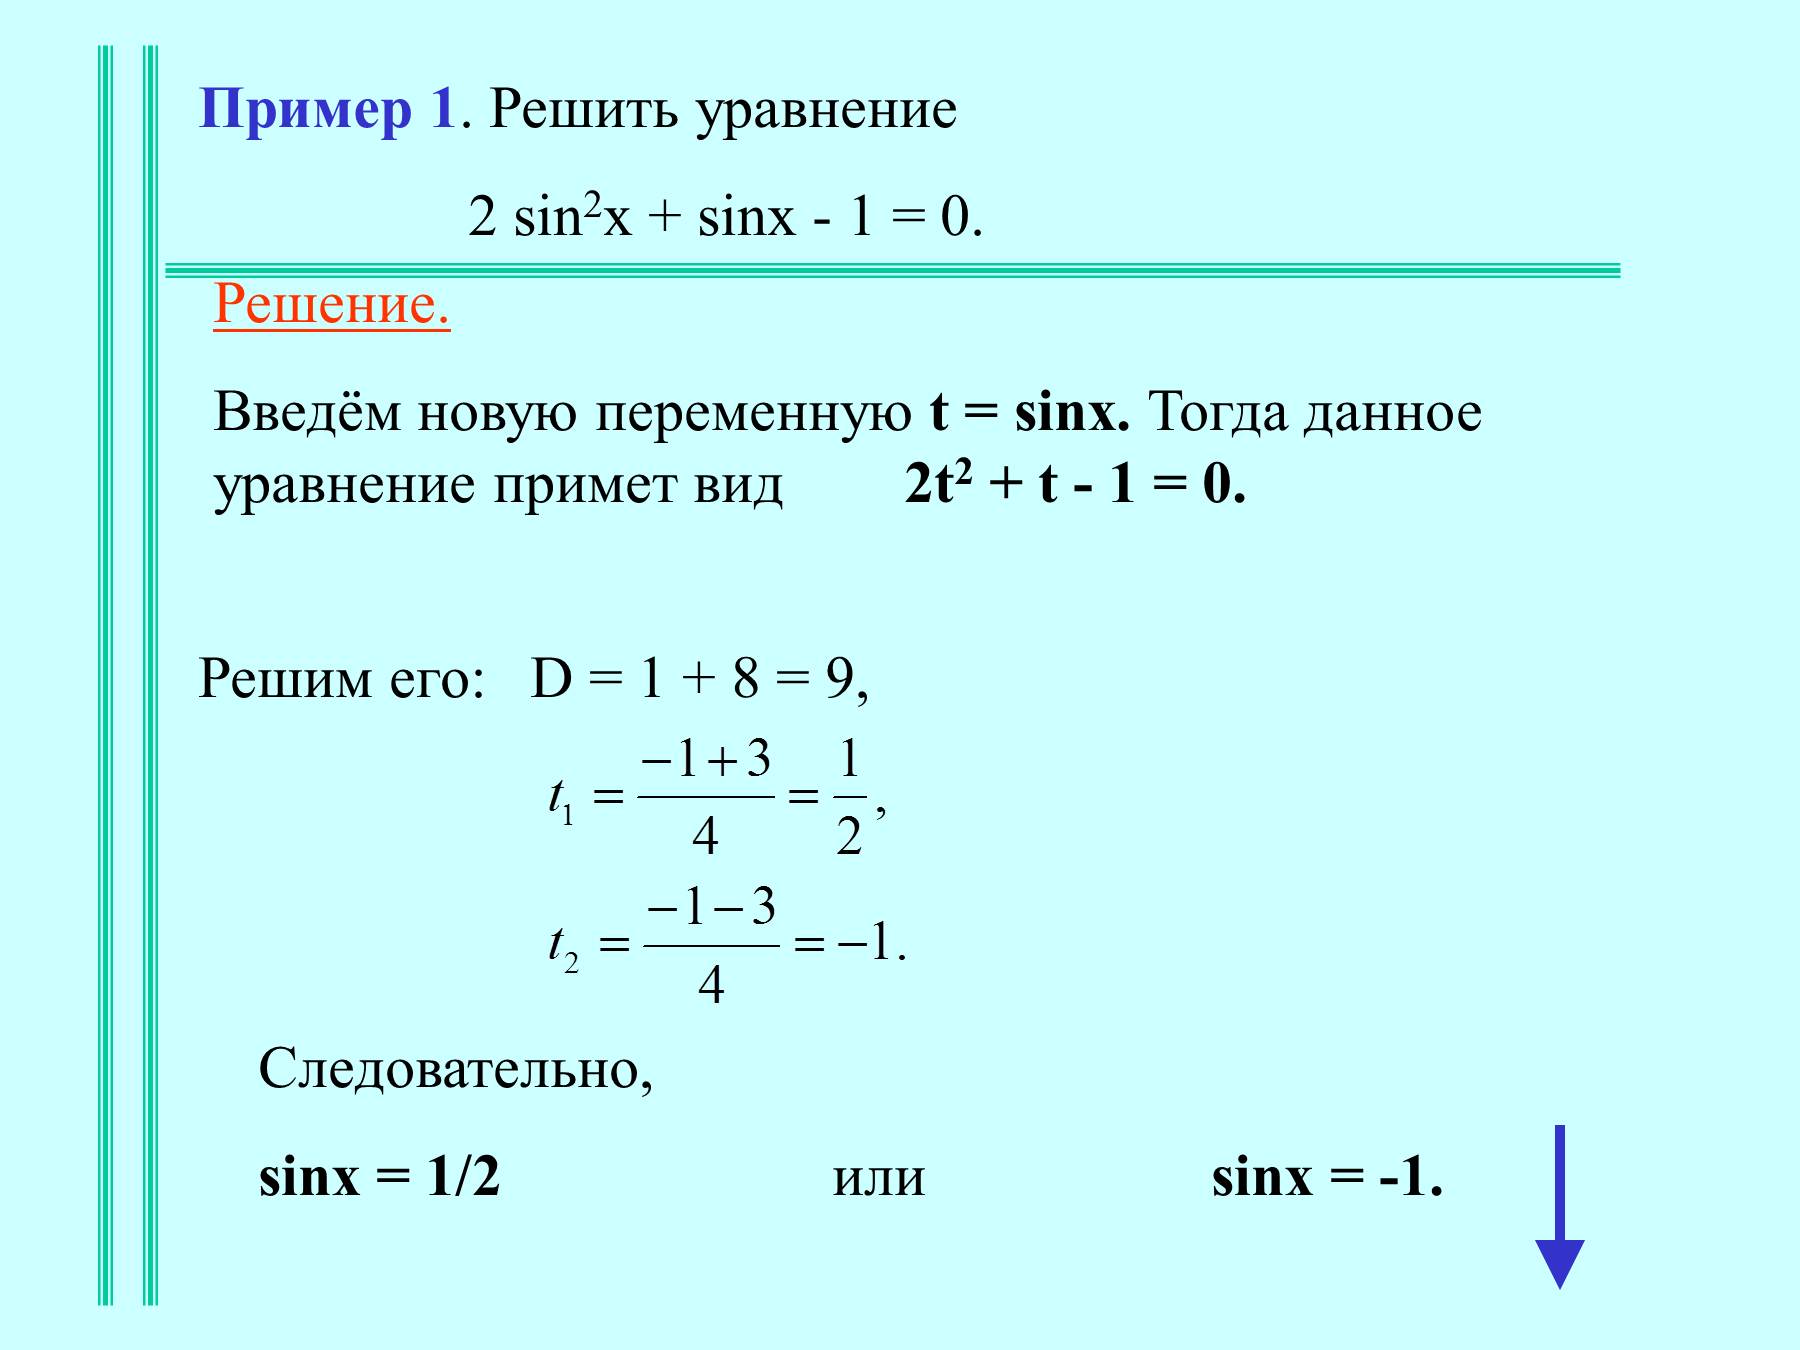 Уравнение 2sin2x 1 0. Sinx 1 2 решение уравнения. Решение уравнения sin x -1/2. 2 Sin2x -2=0 решение уравнение. Решение уравнение 2sin2x _sin x-2=0.